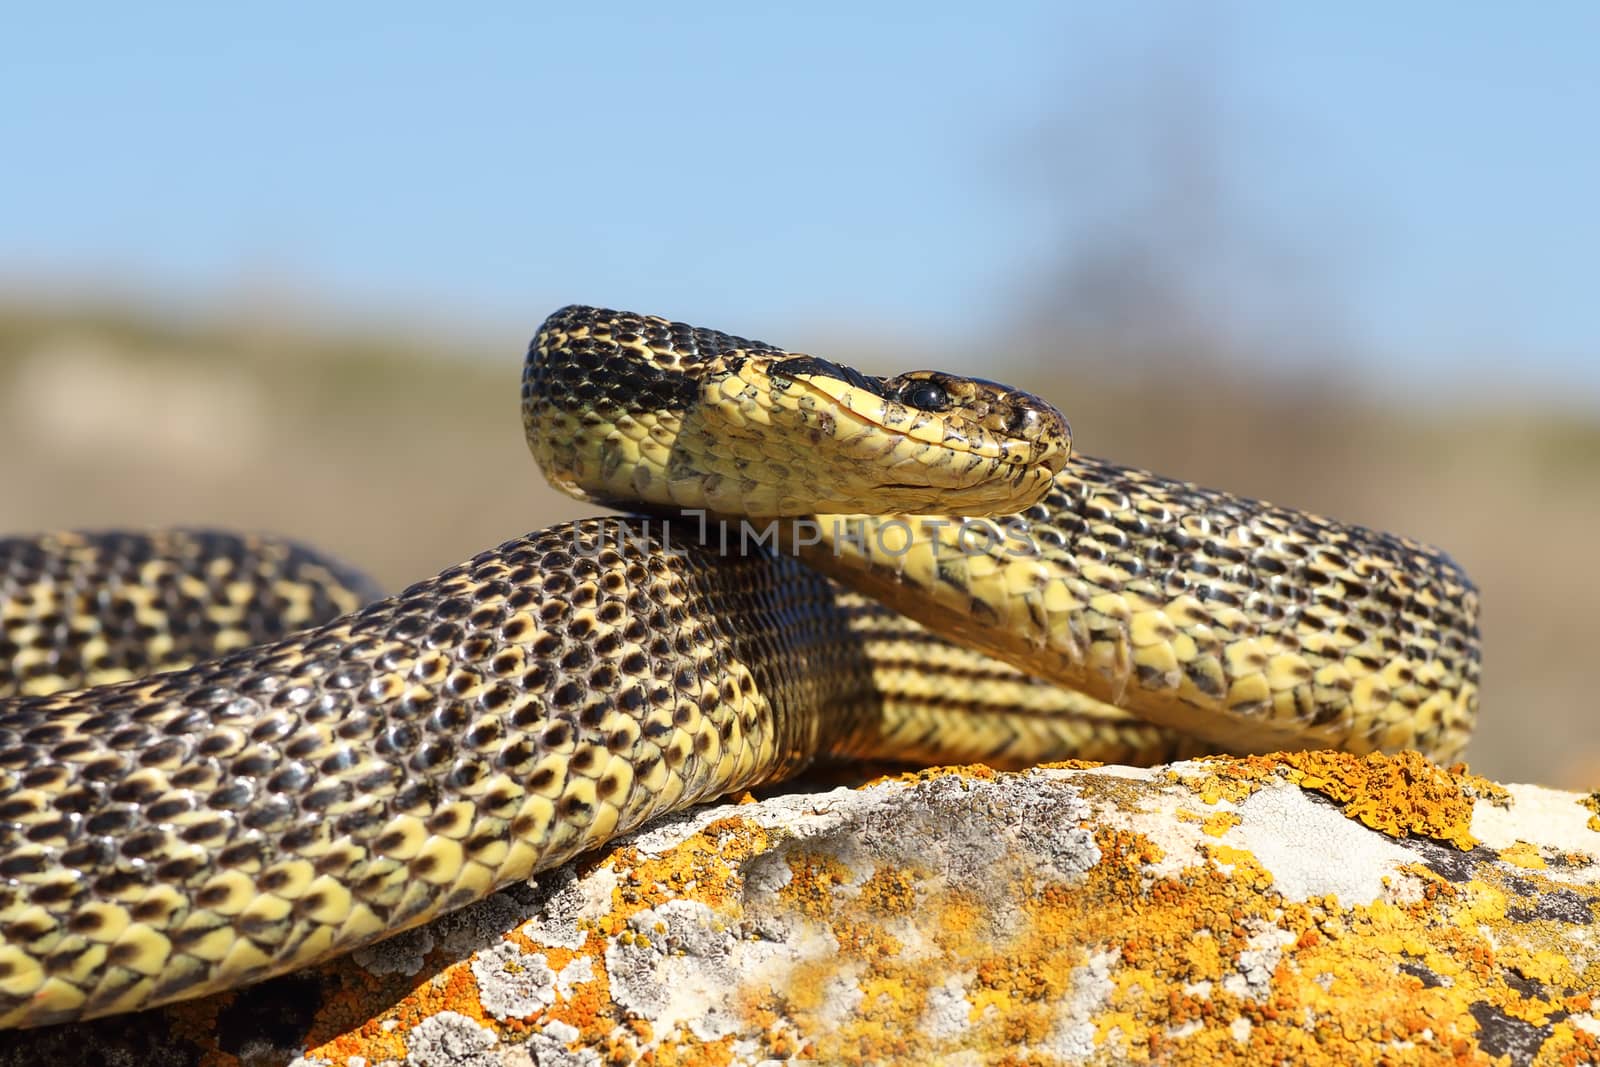 Elaphe sauromates ready to strike ( large blotched snake )